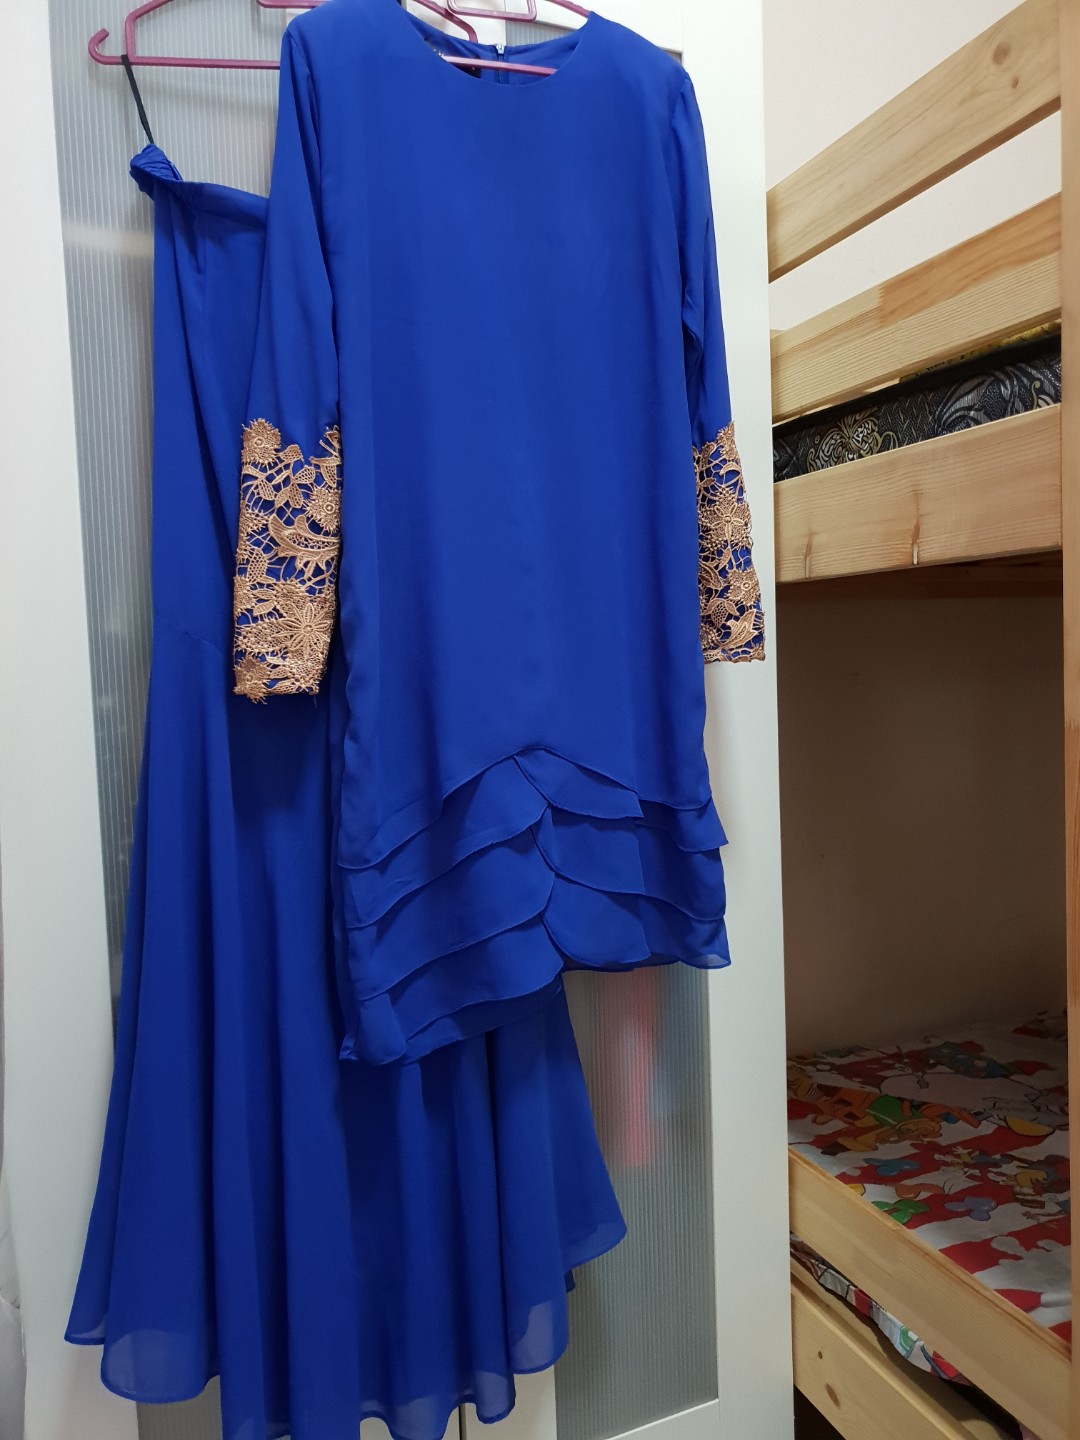 baju kurung moden royal blue 2018